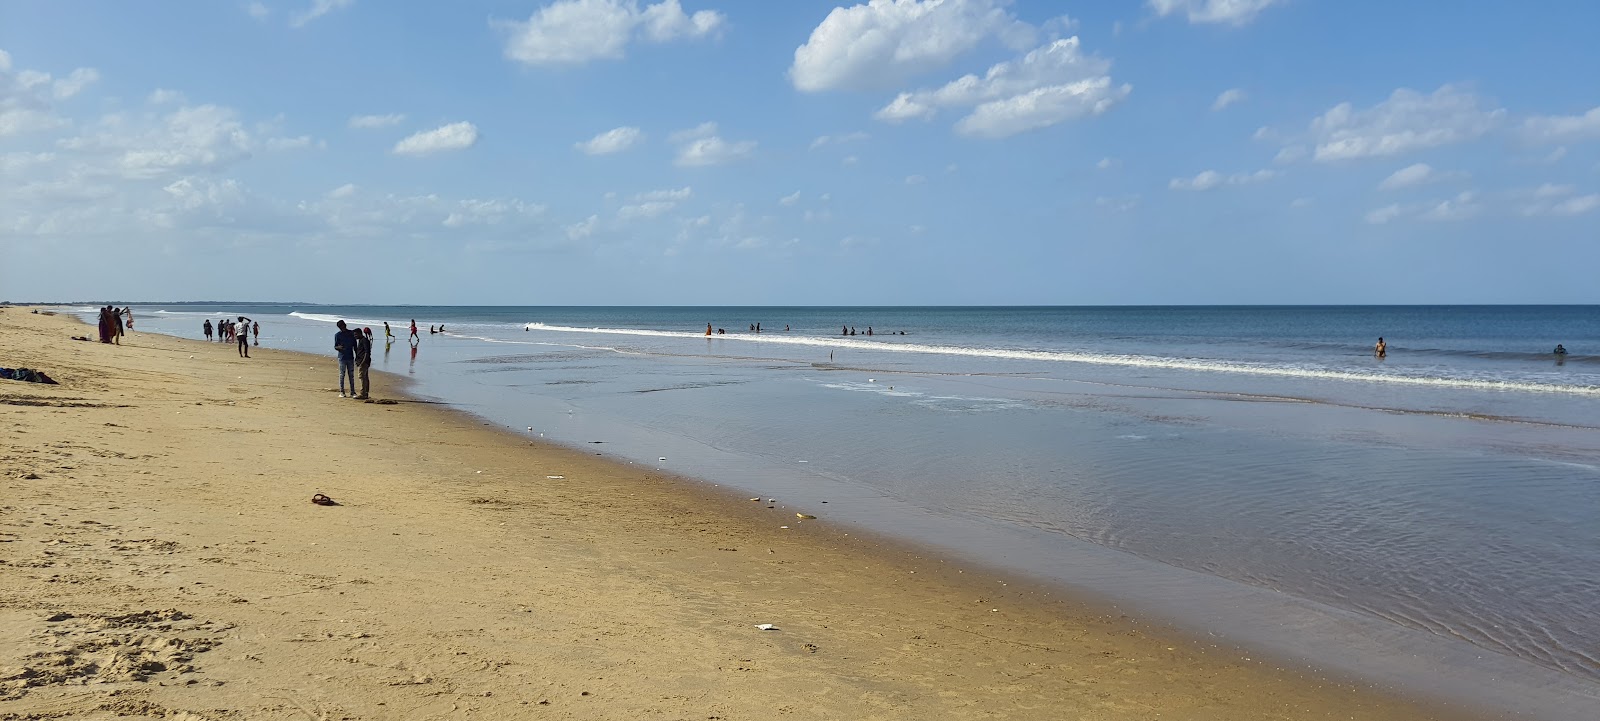 Ramayapattanam public Beach'in fotoğrafı parlak kum yüzey ile